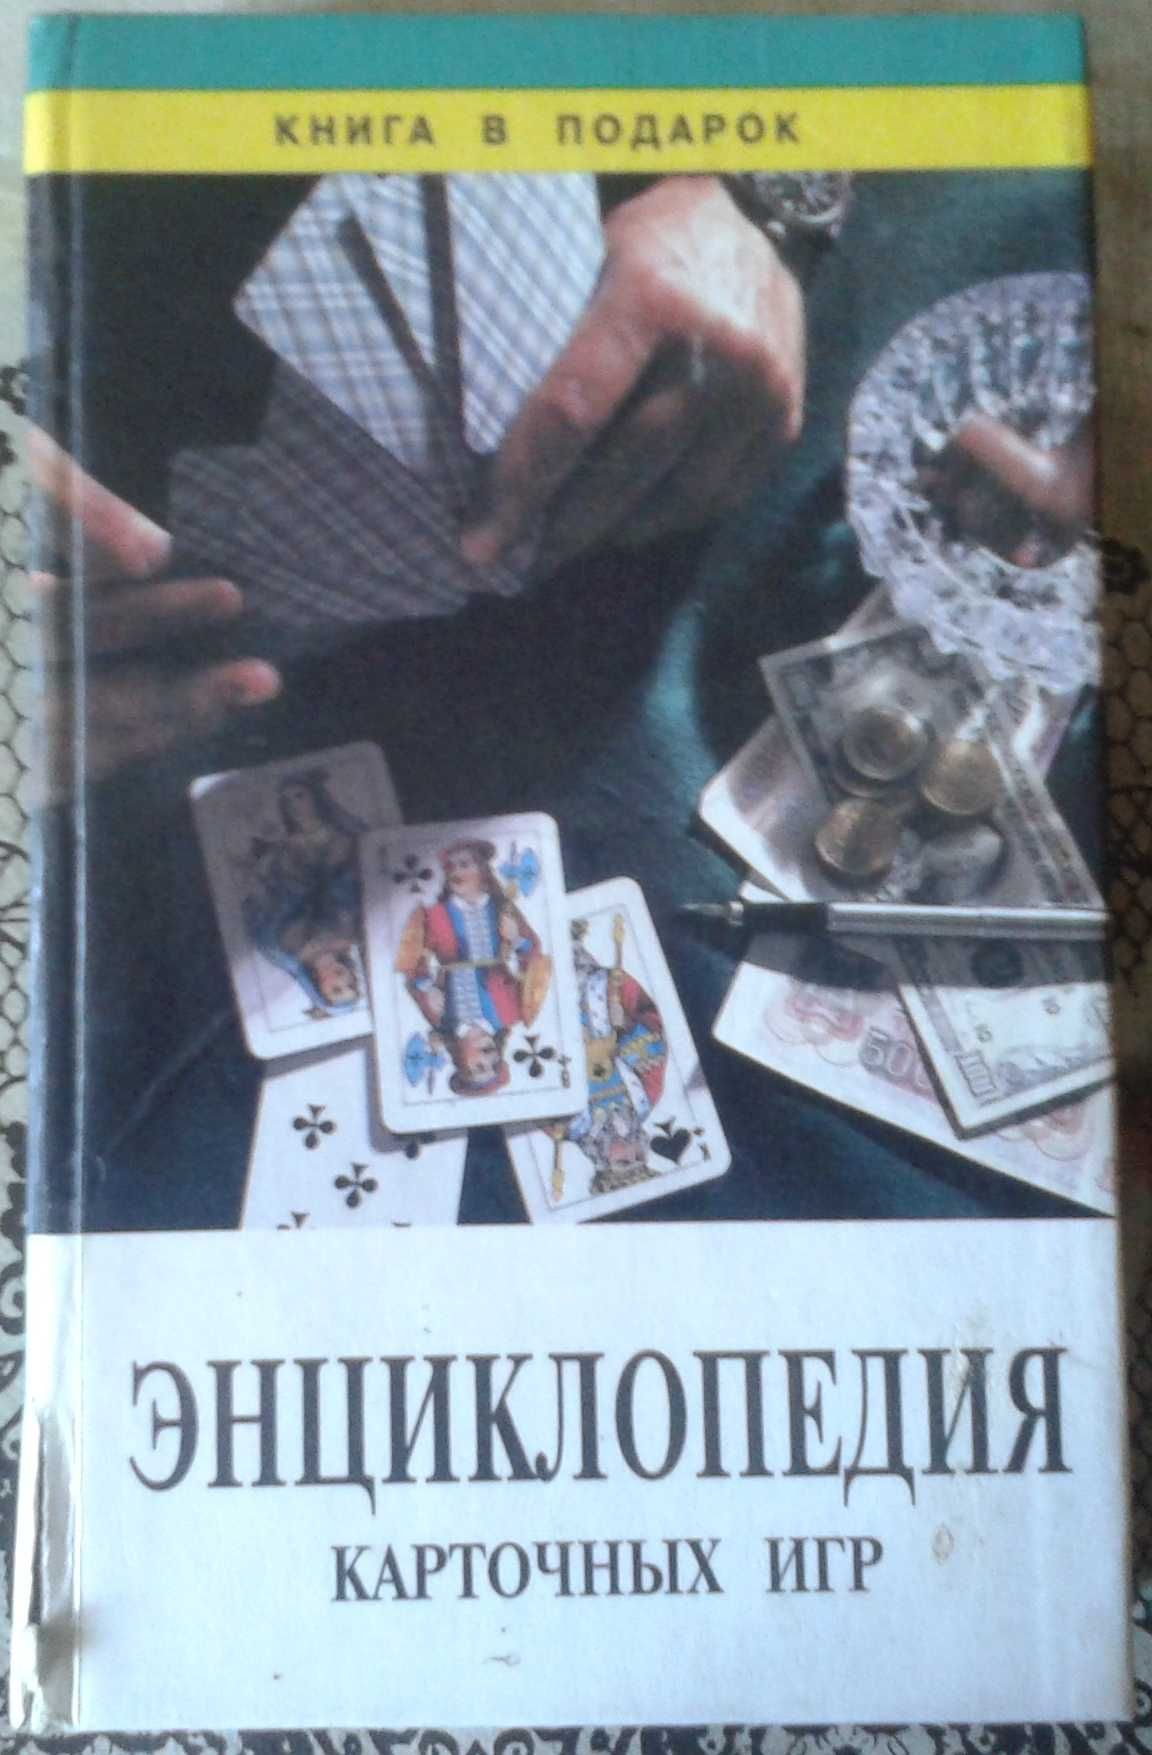 Энциклопедия карточных игр